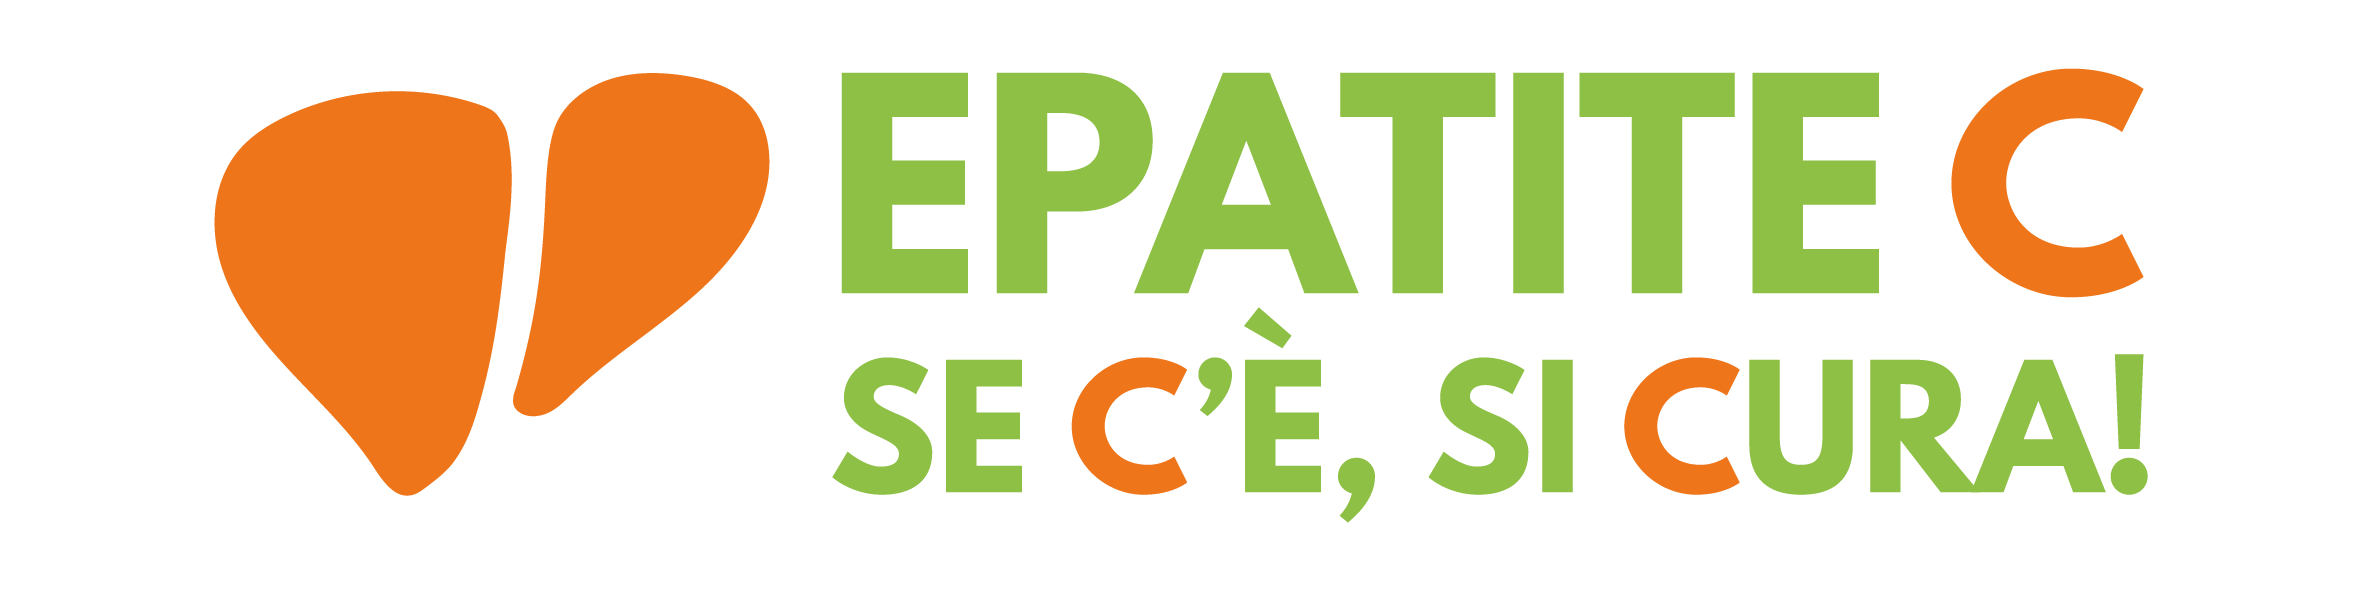 Logo Epatite C Arancio Verde